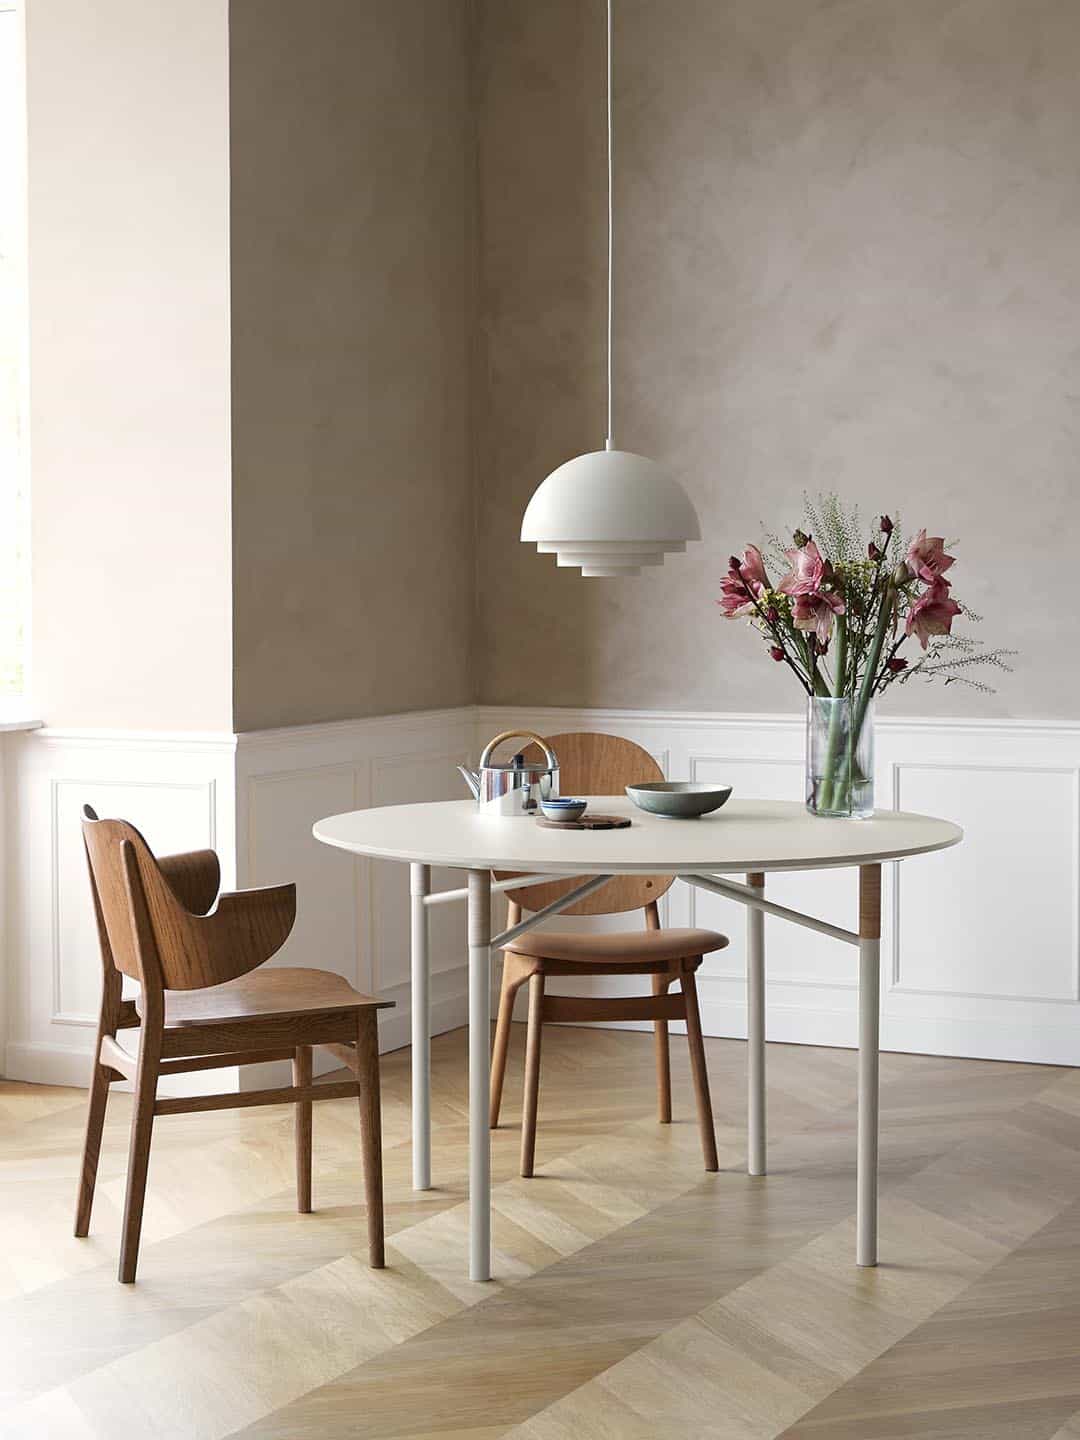 Элитный обеденный стол Warm Nordic Affinity в минималистичном интерьере